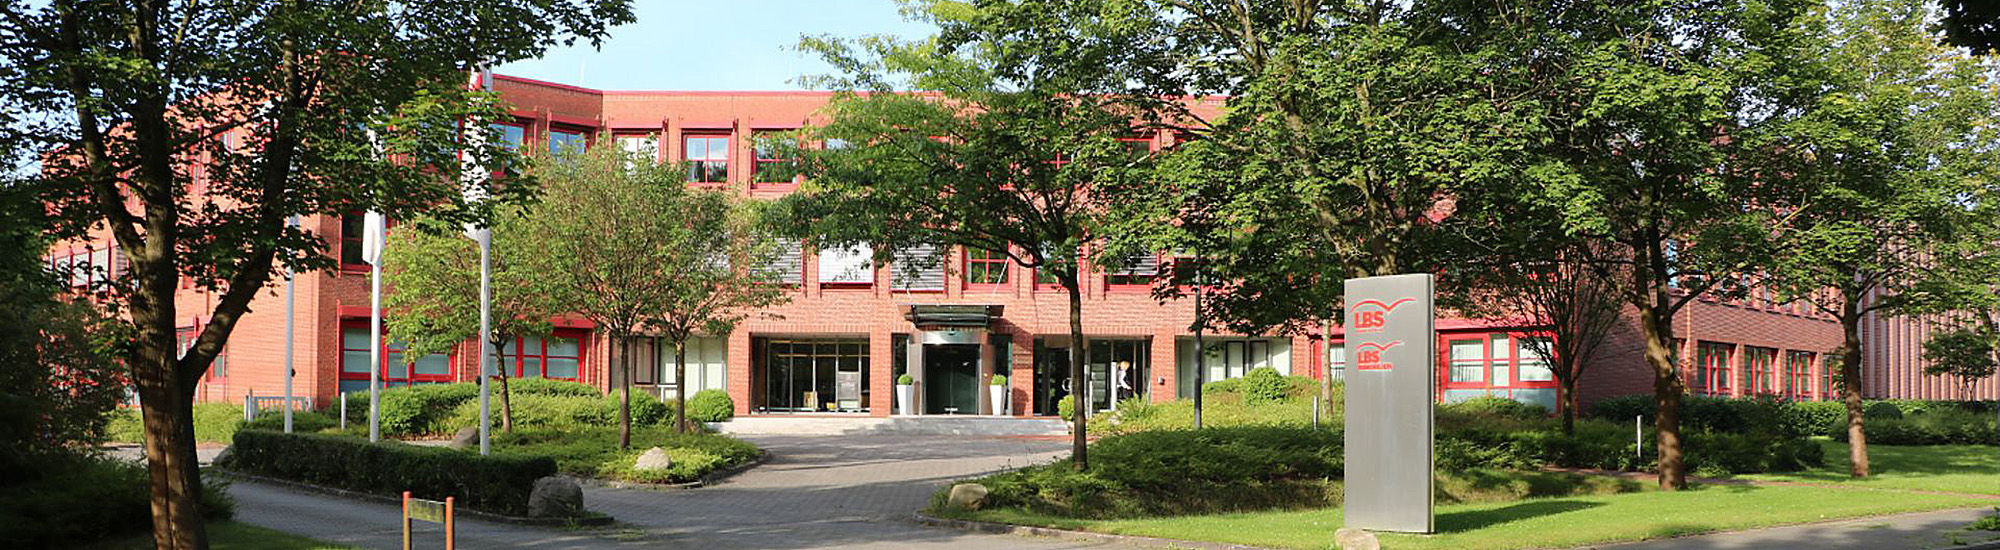 LBS Immobilien GmbH Schleswig-Holstein